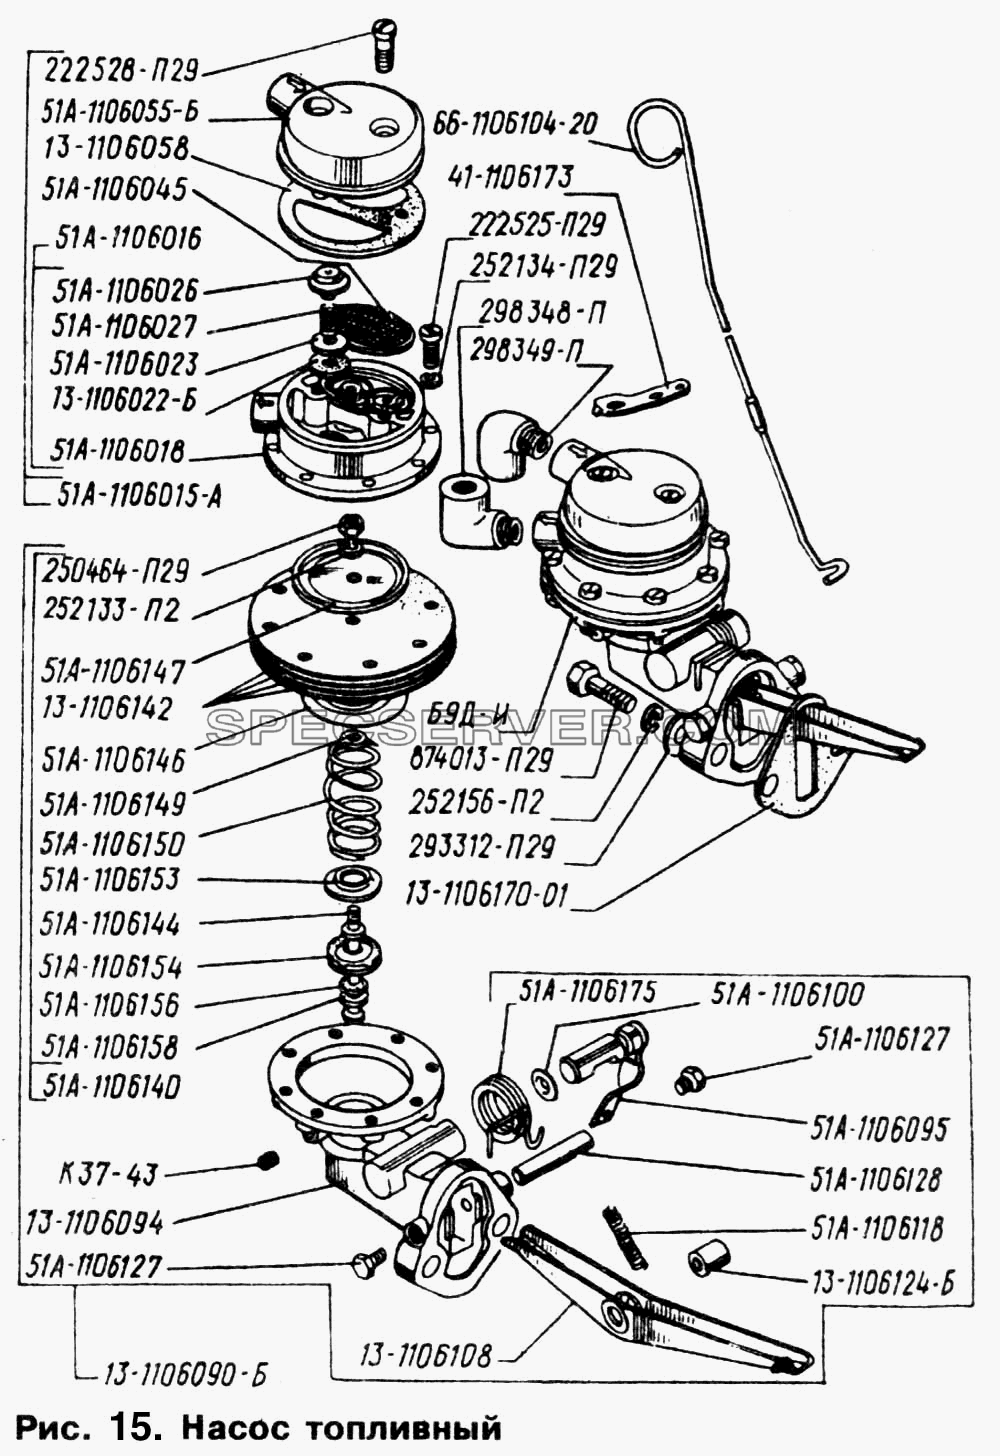 Насос топливный для ГАЗ-66 (Каталога 1996 г.) (список запасных частей)